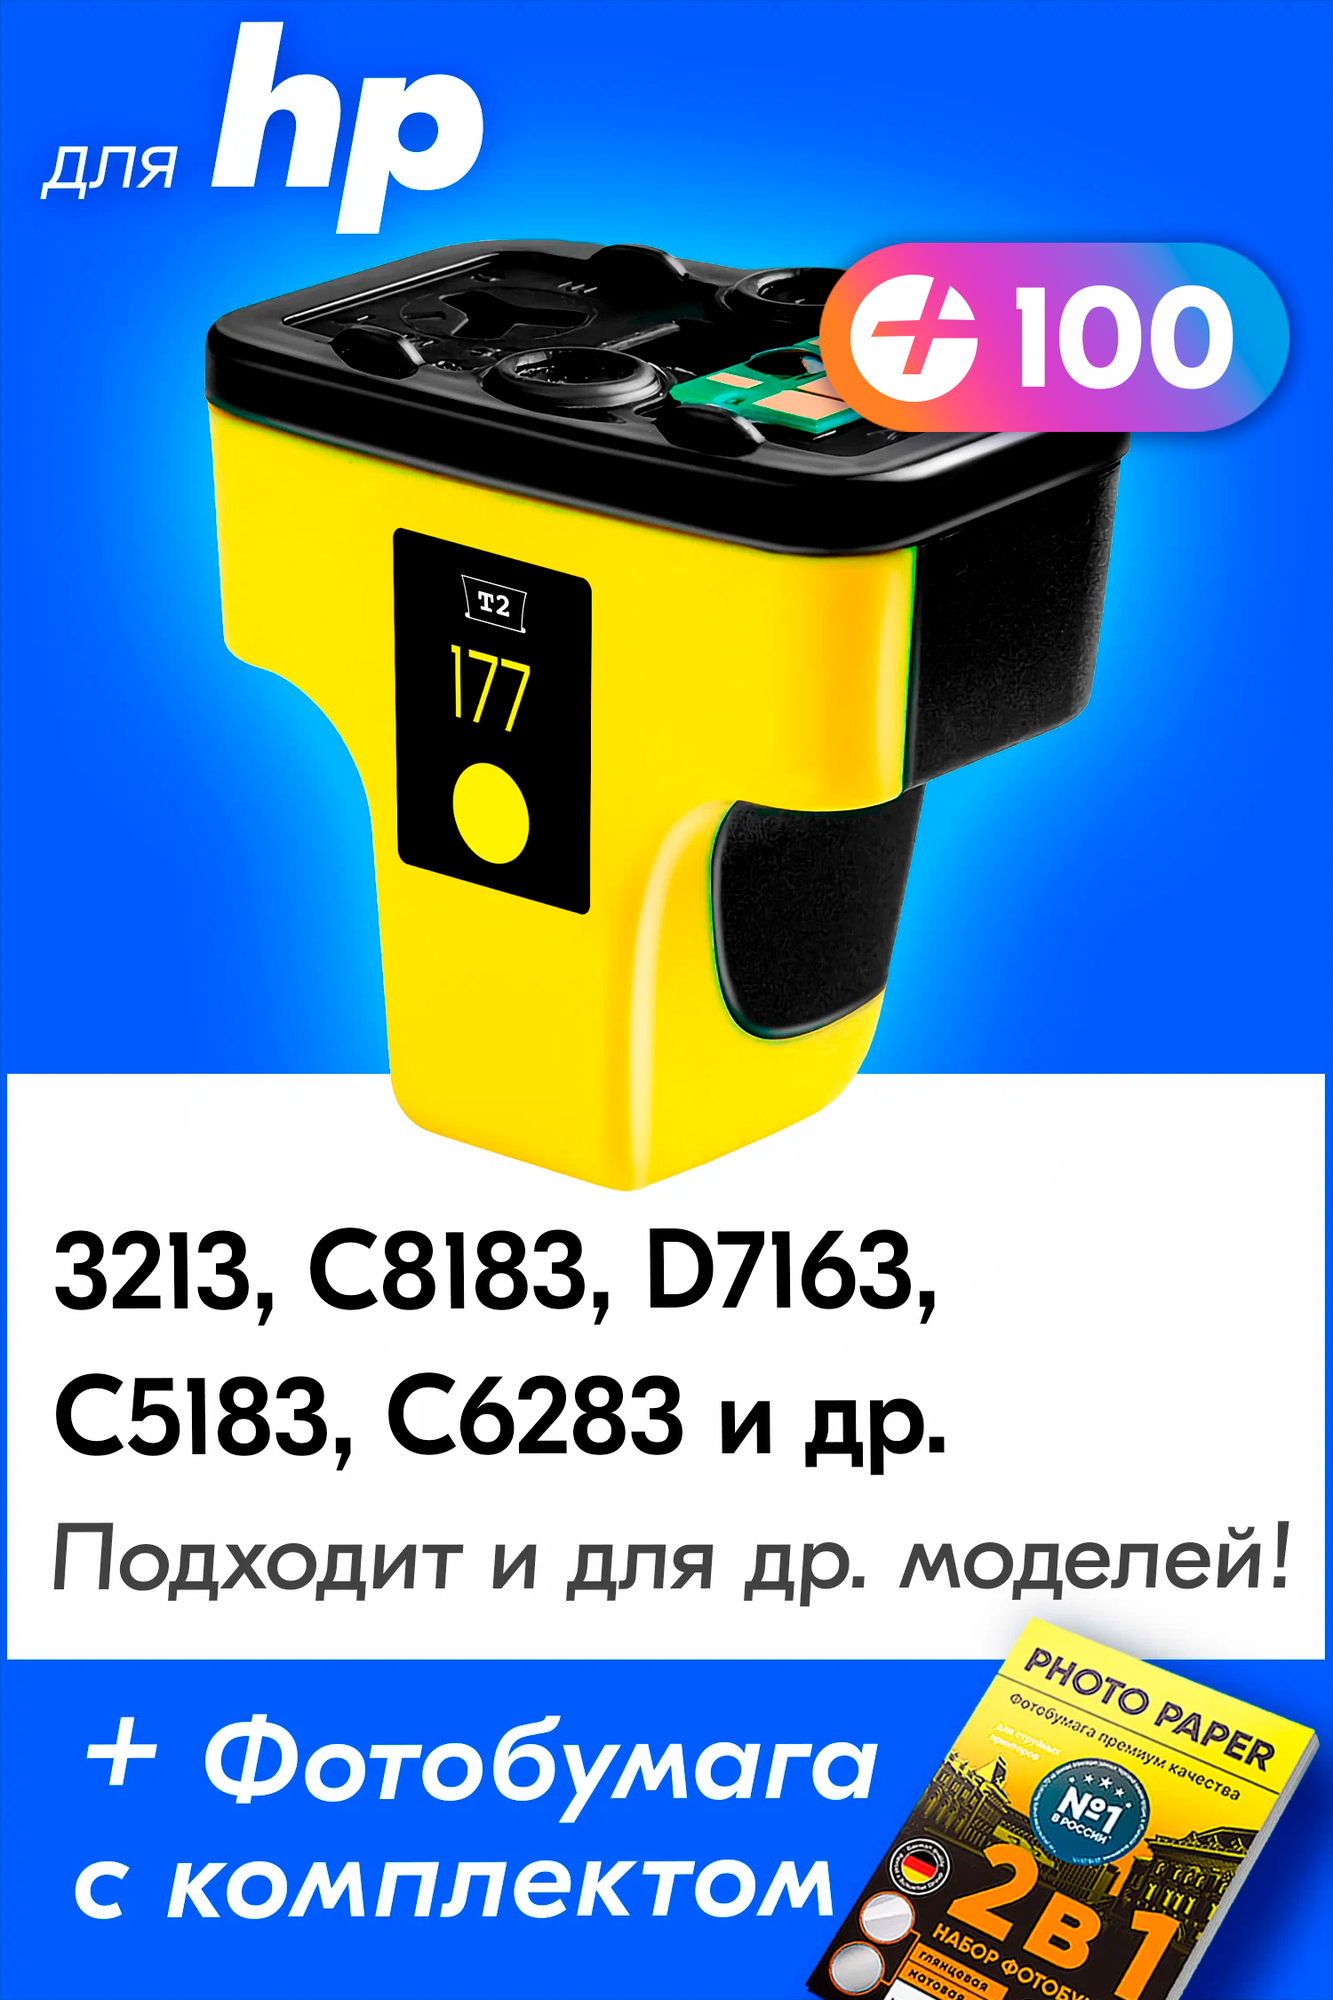 Картридж для HP 177, HP Photosmart 3213, C8183, D7163 и др. с чернилами (с краской) для струйного принтера, Желтый (Yellow), 1 шт.